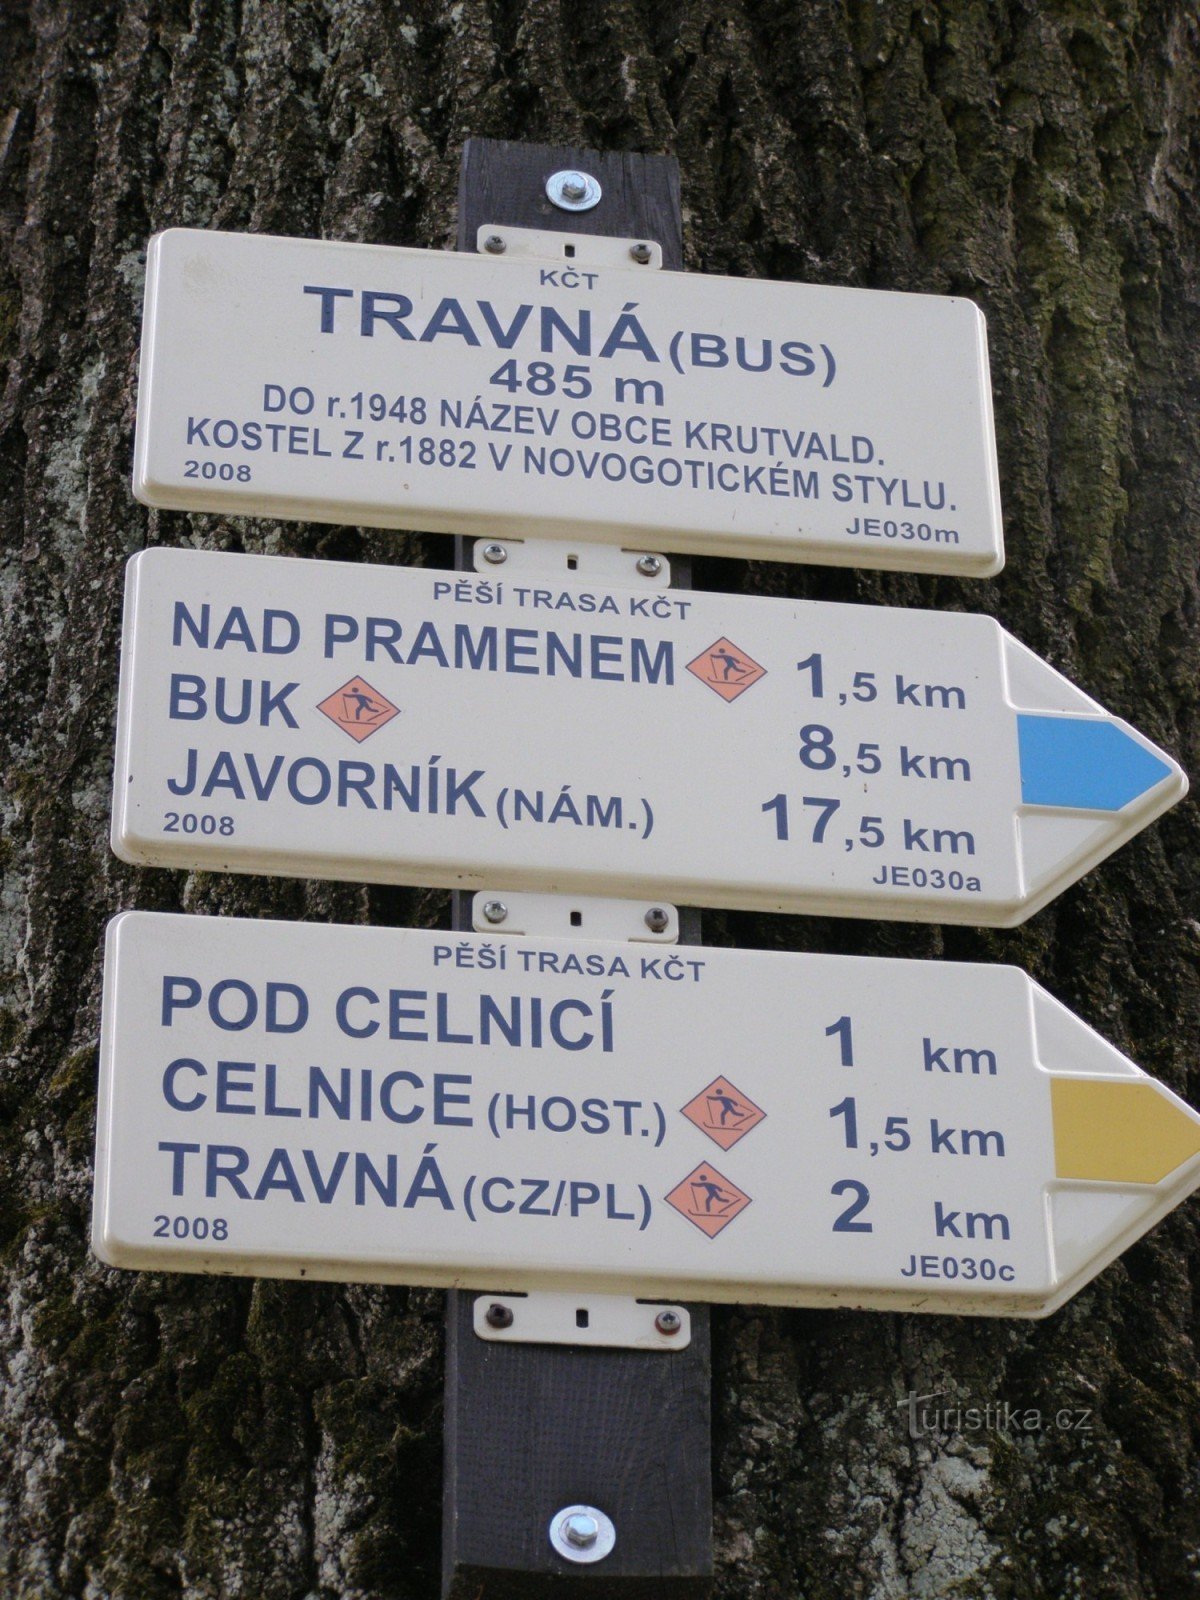 encrucijada turística Travná - autobús